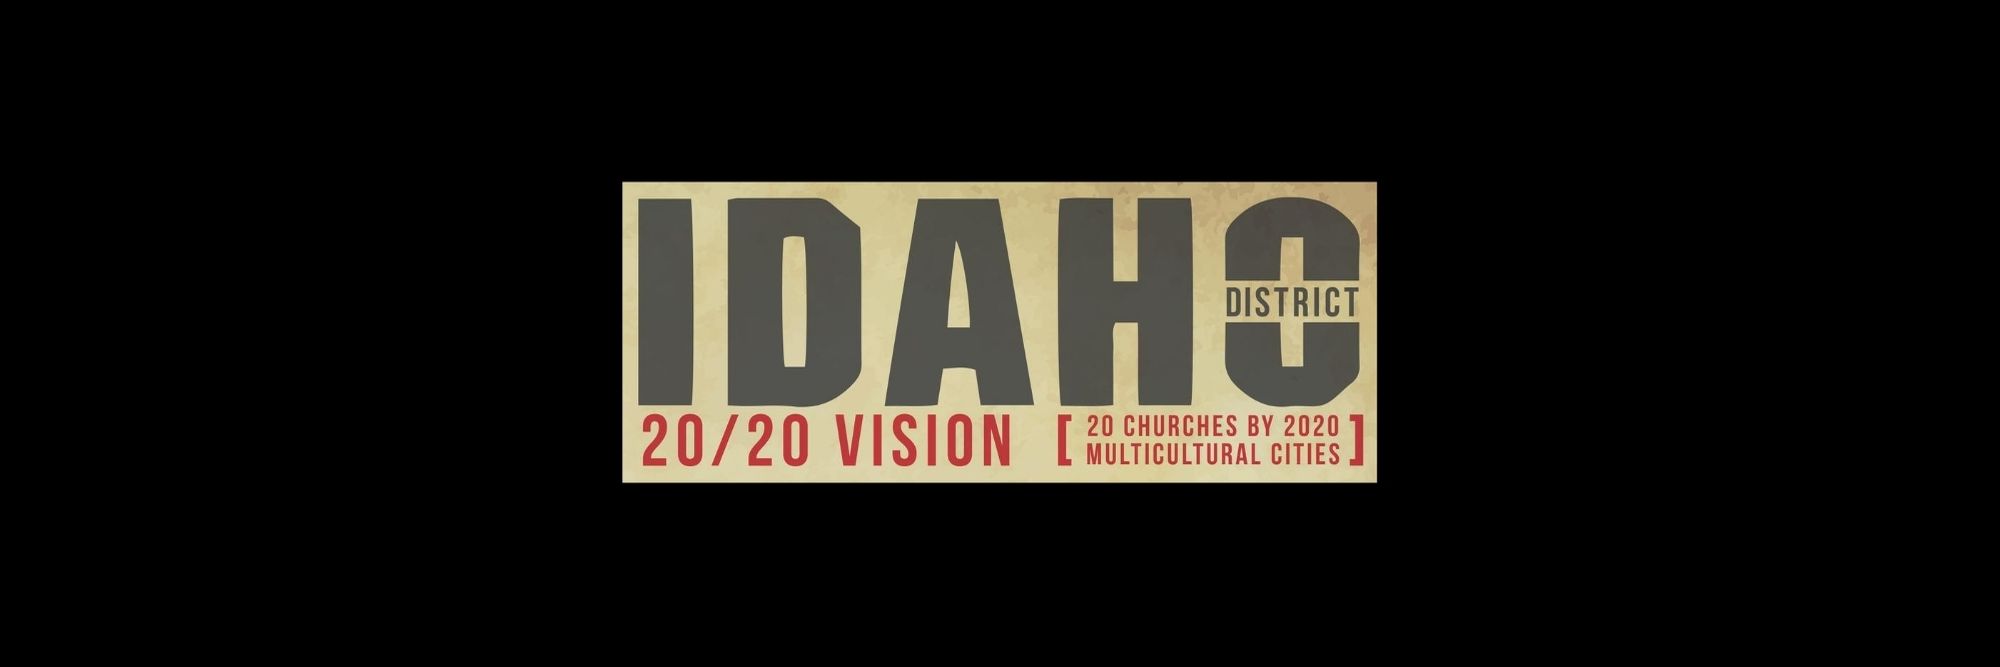 Idaho “2020 Vision”